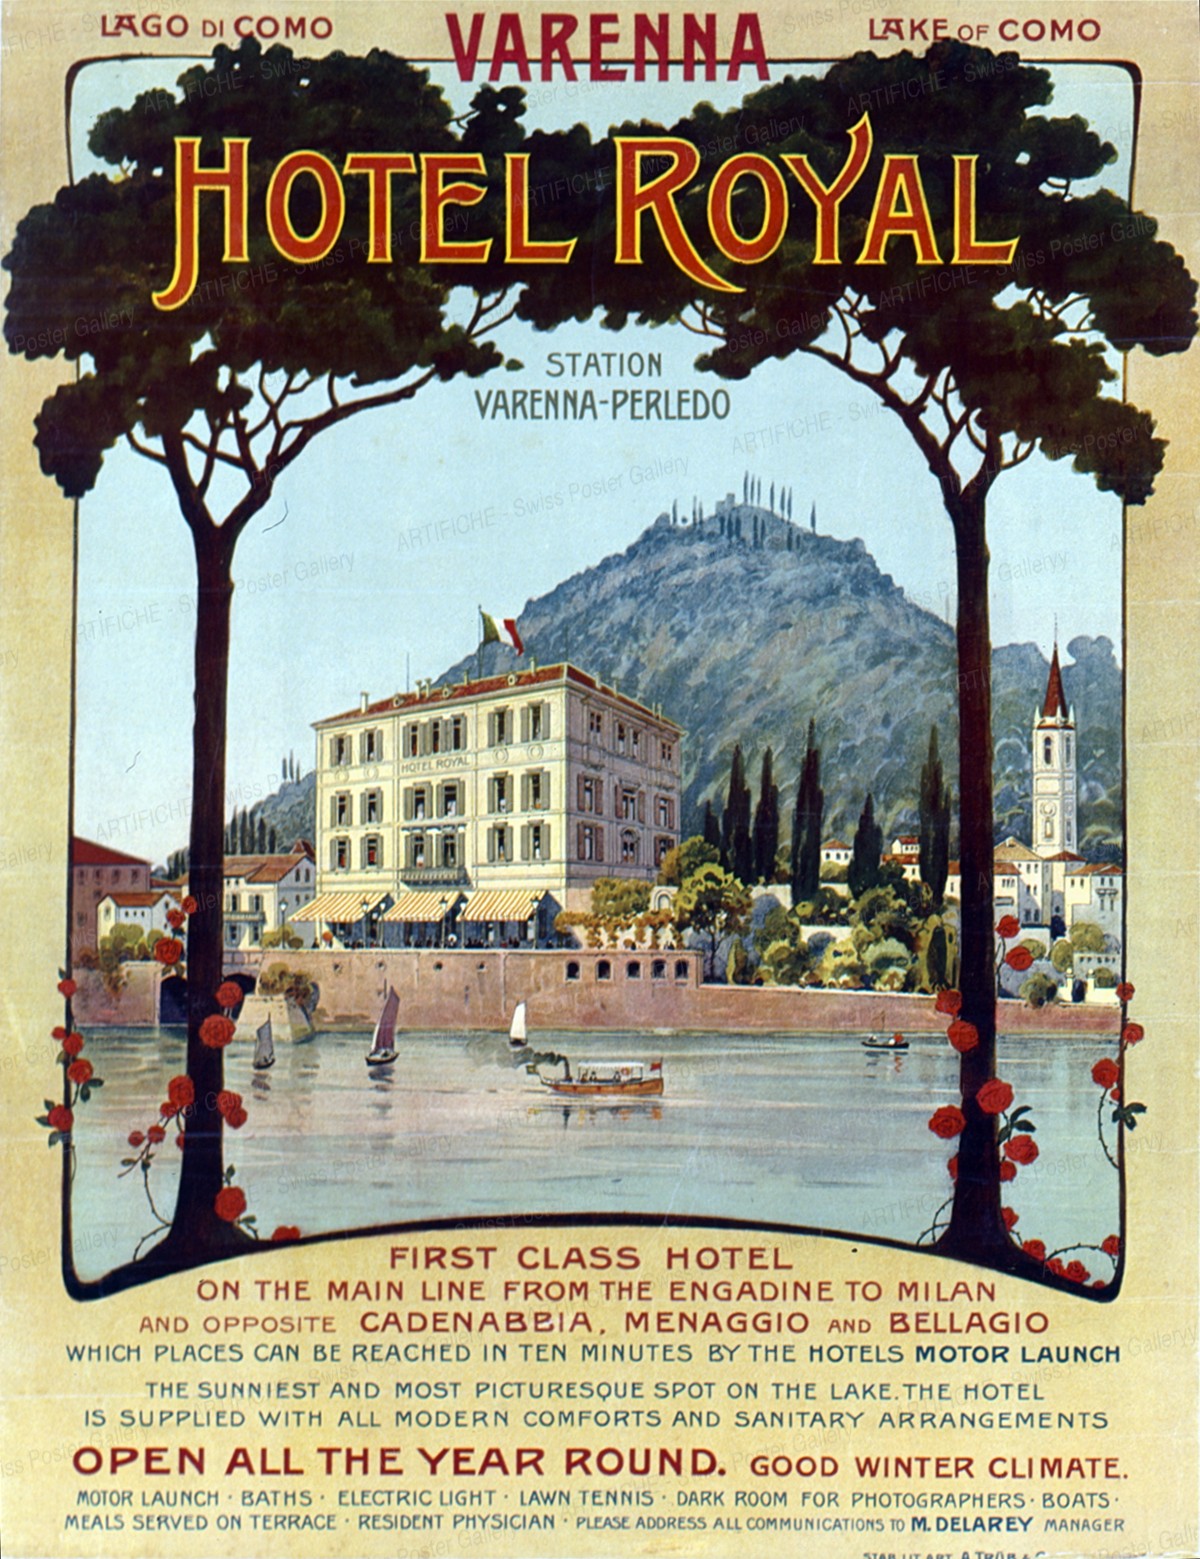 VARENNA – HOTEL ROYAL – Lago di Como, Artist unknown